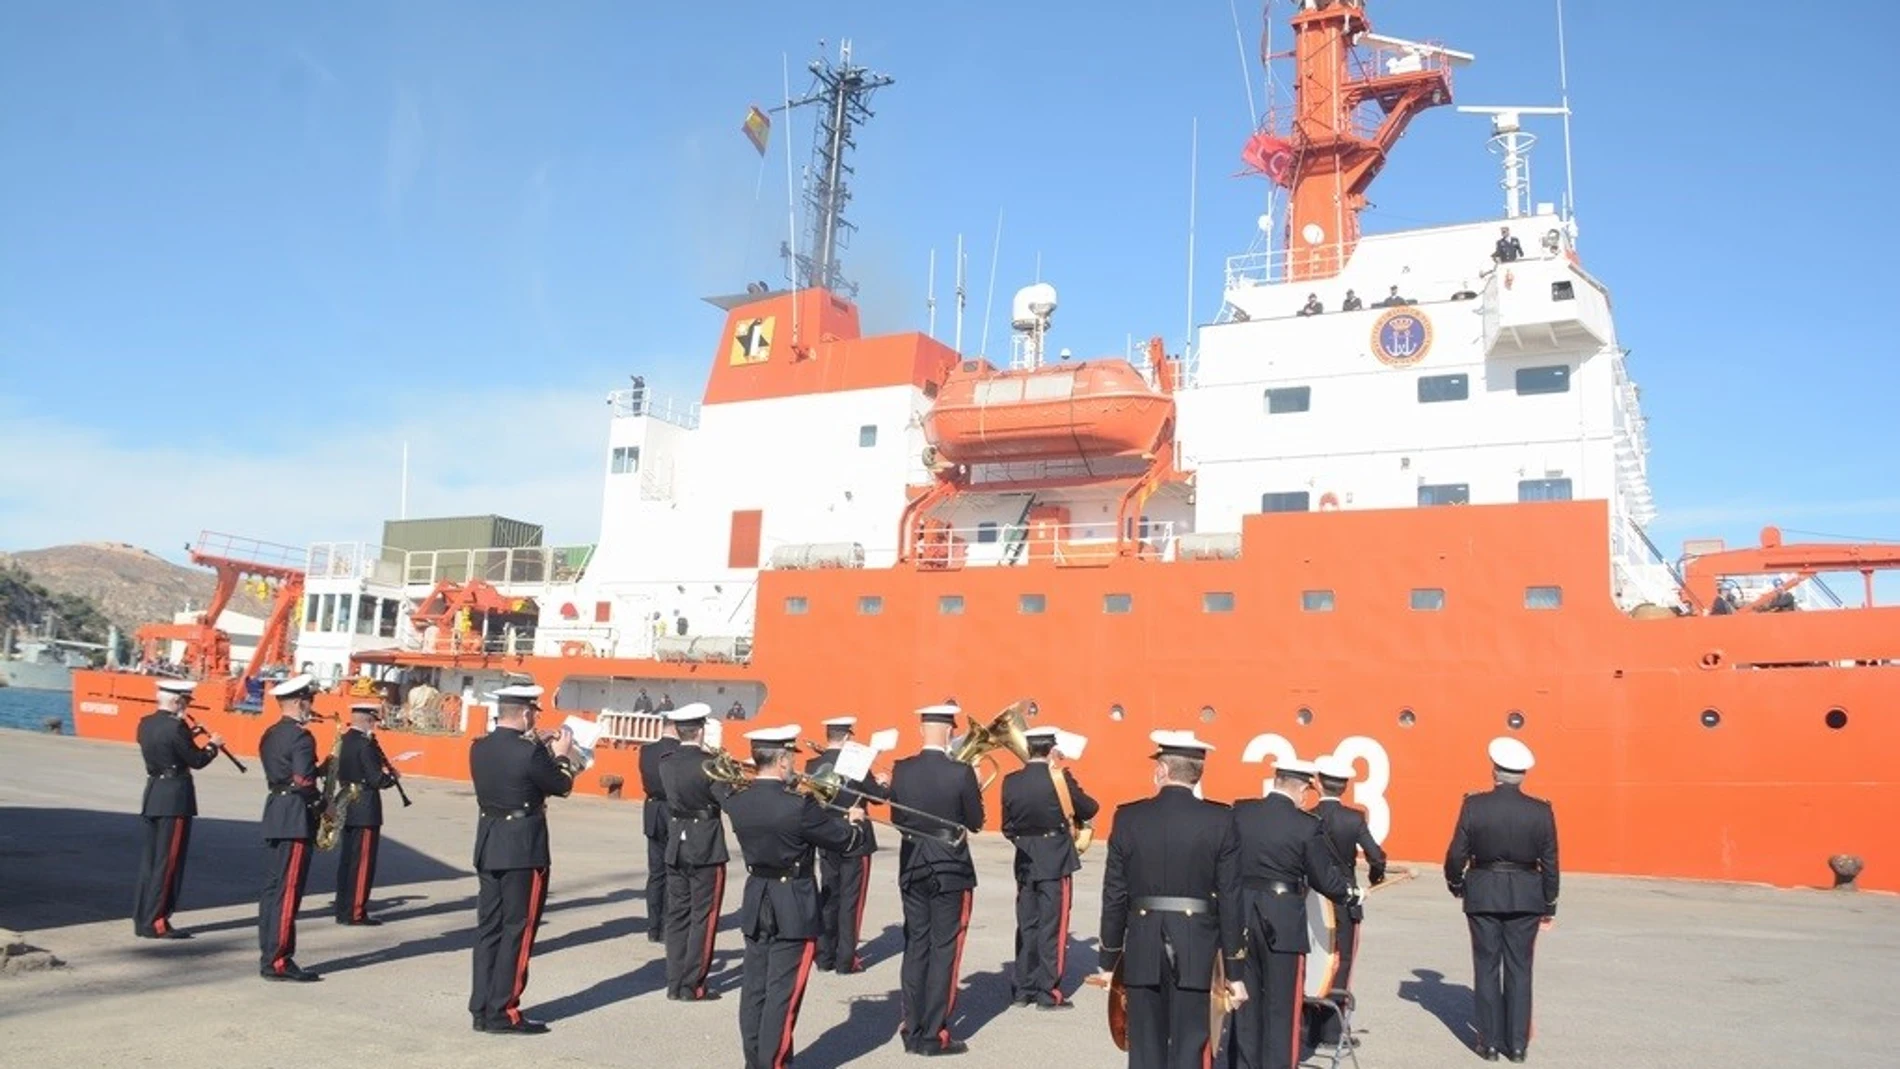 Imagen de la despedida del buque Hespérides en CartagenaARMADA30/12/2020